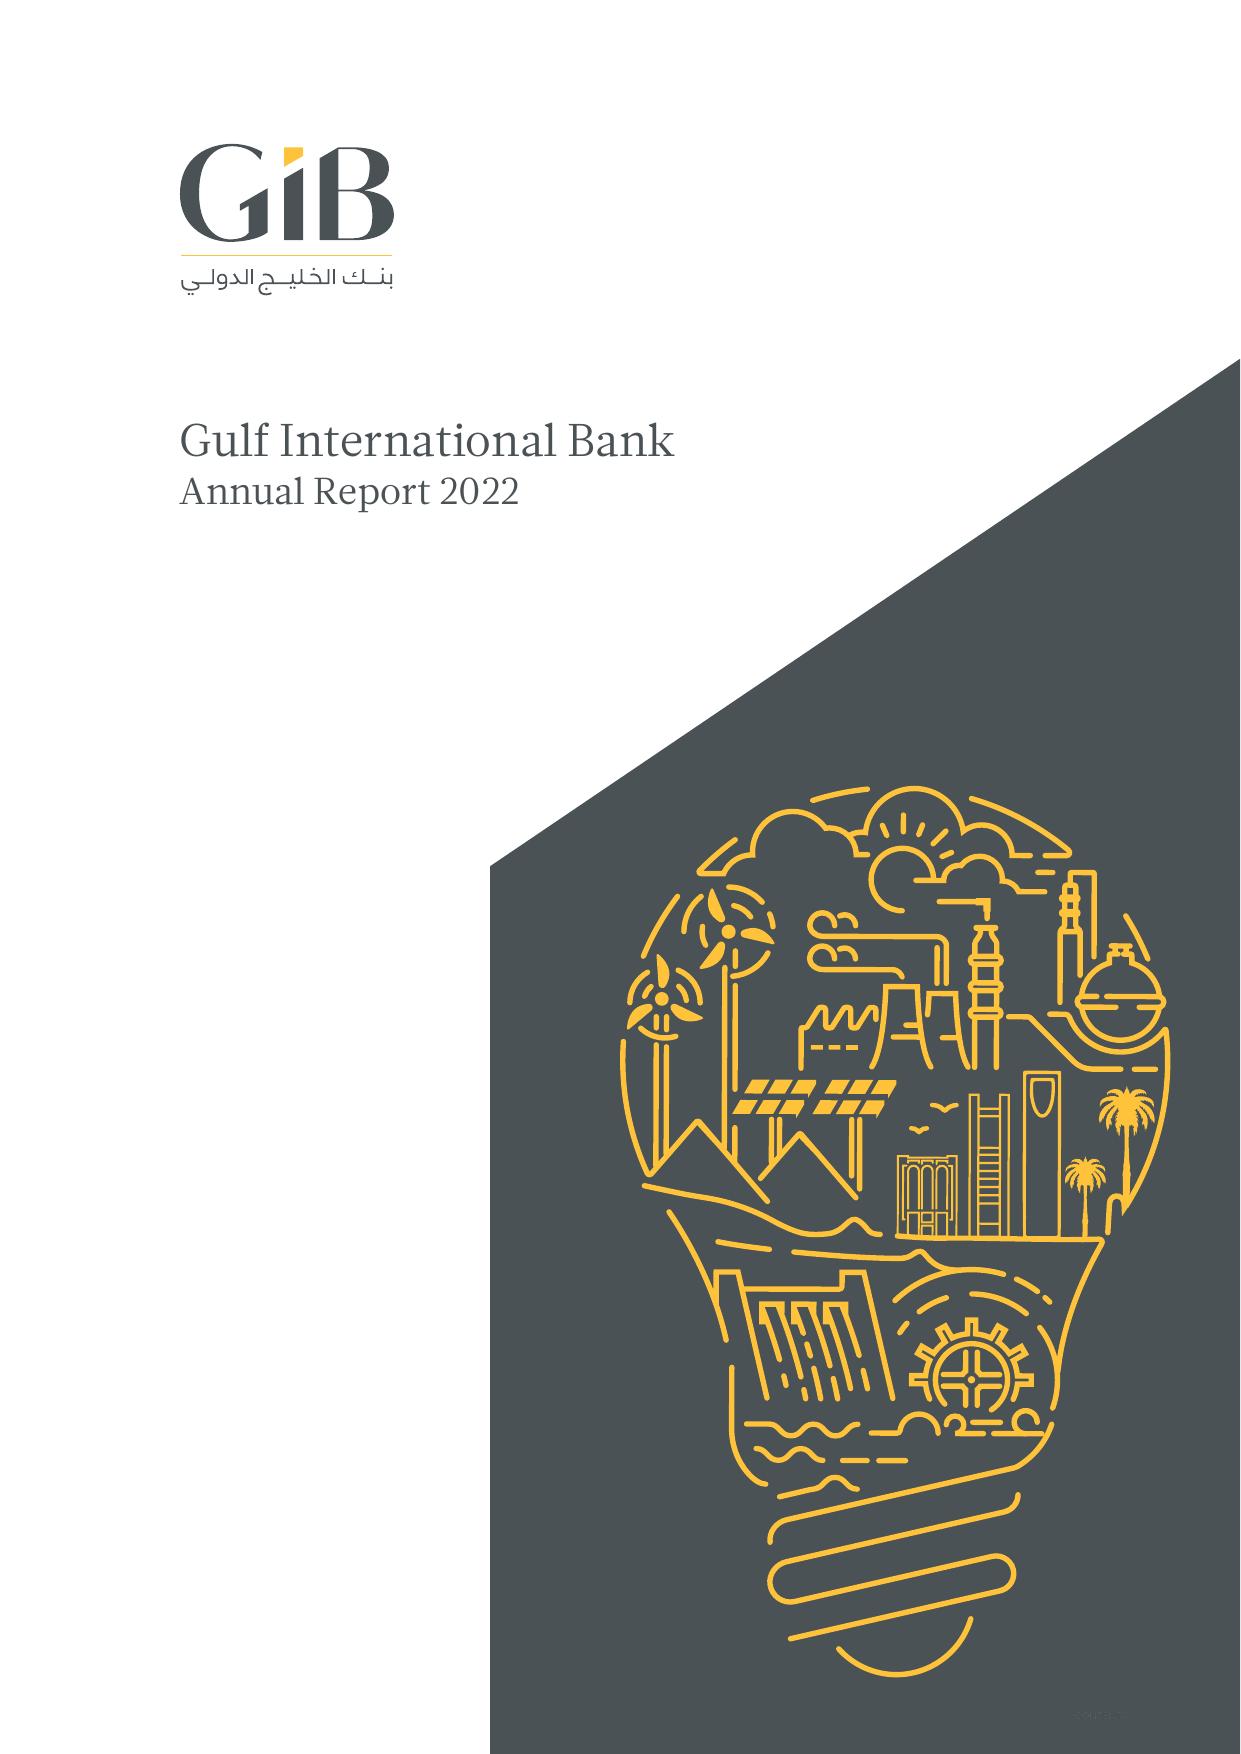 ISLANDSAVINGS 2022 Annual Report